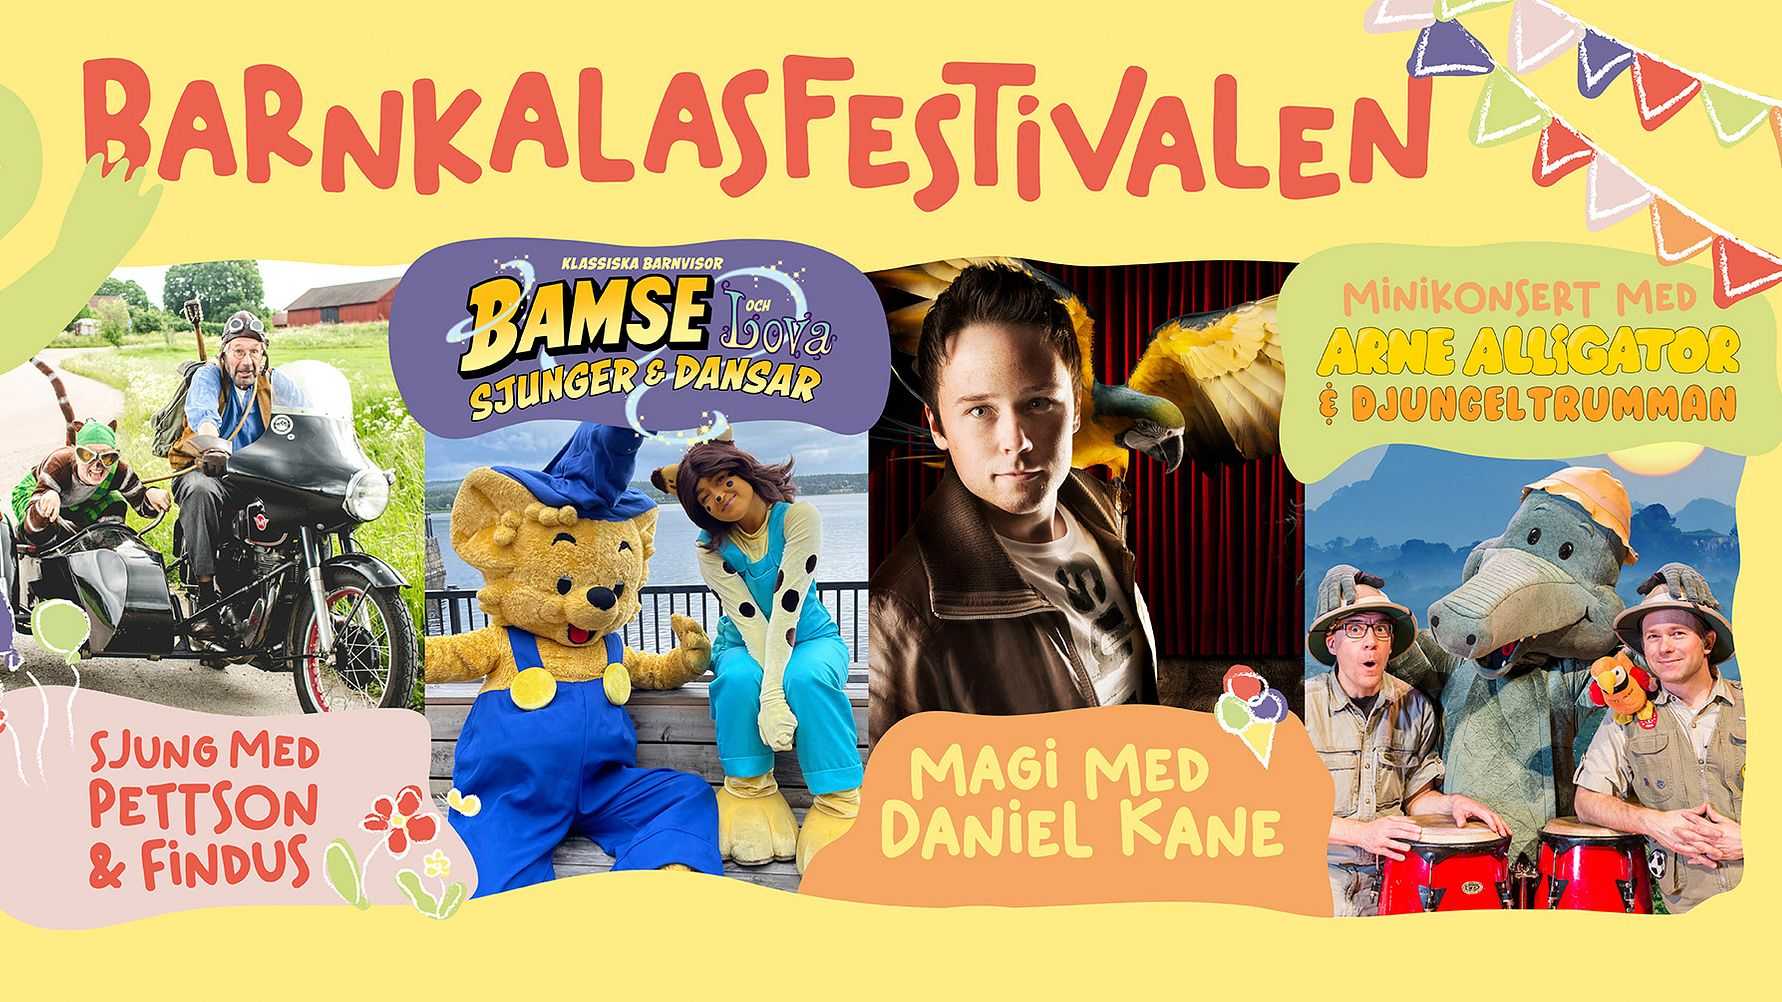 Sveriges största barnkalasfestival är tillbaka!